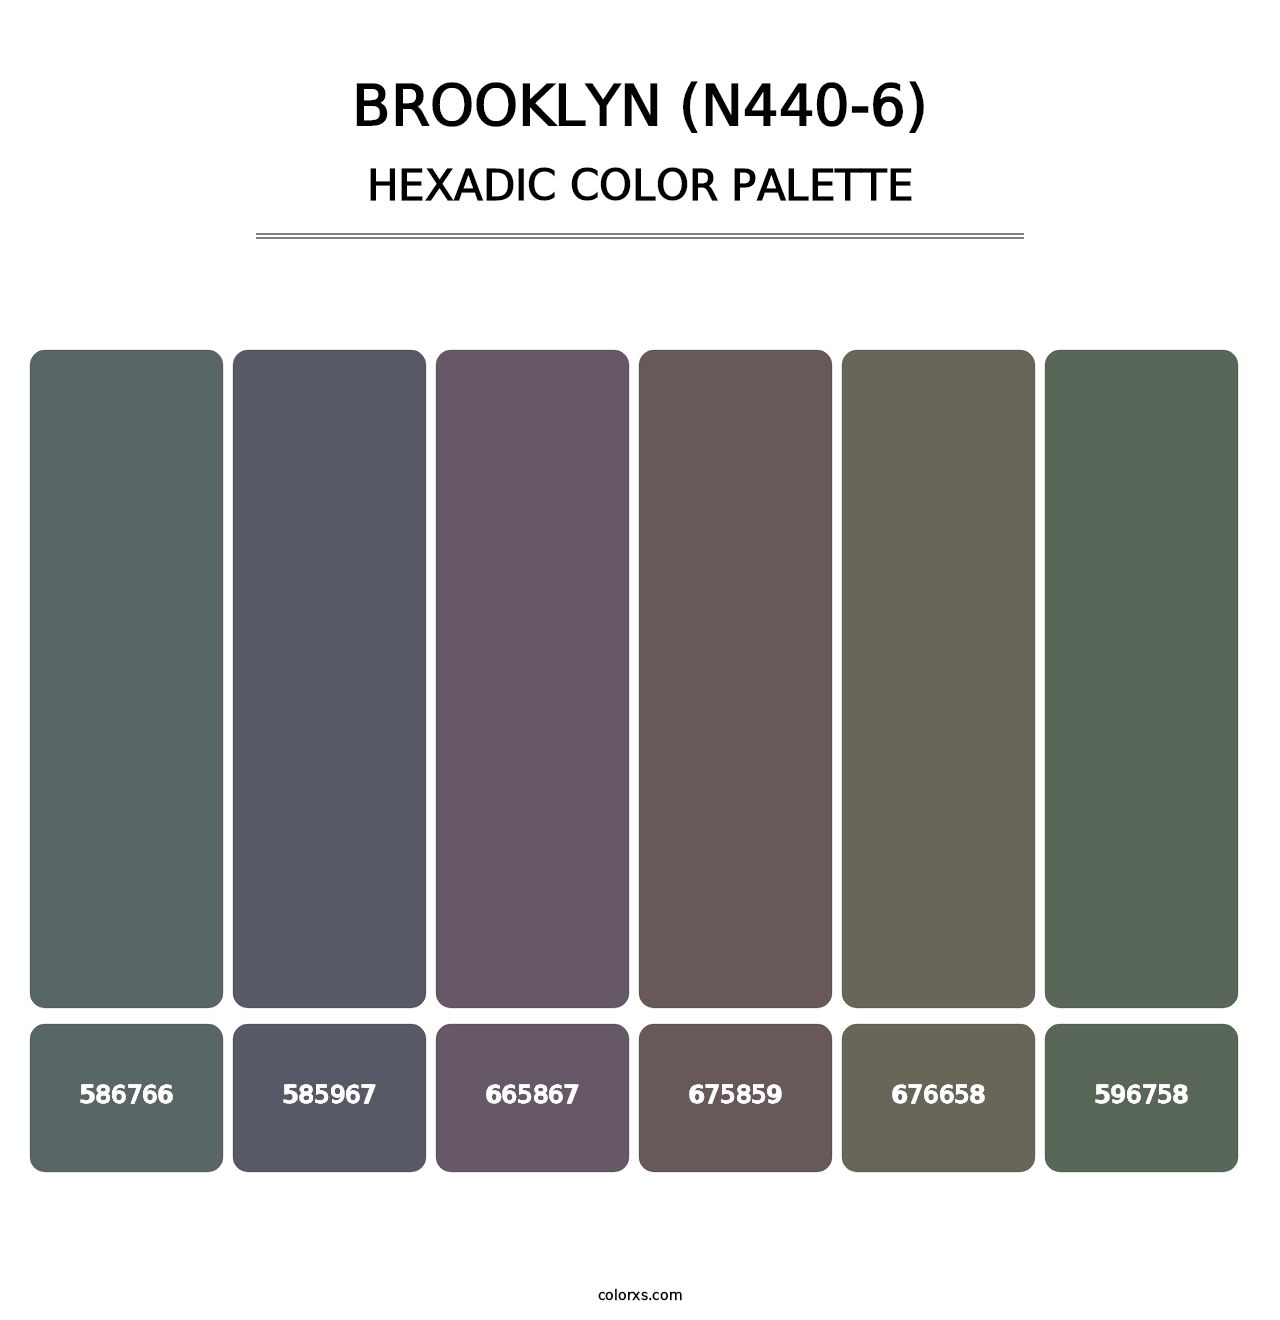 Brooklyn (N440-6) - Hexadic Color Palette